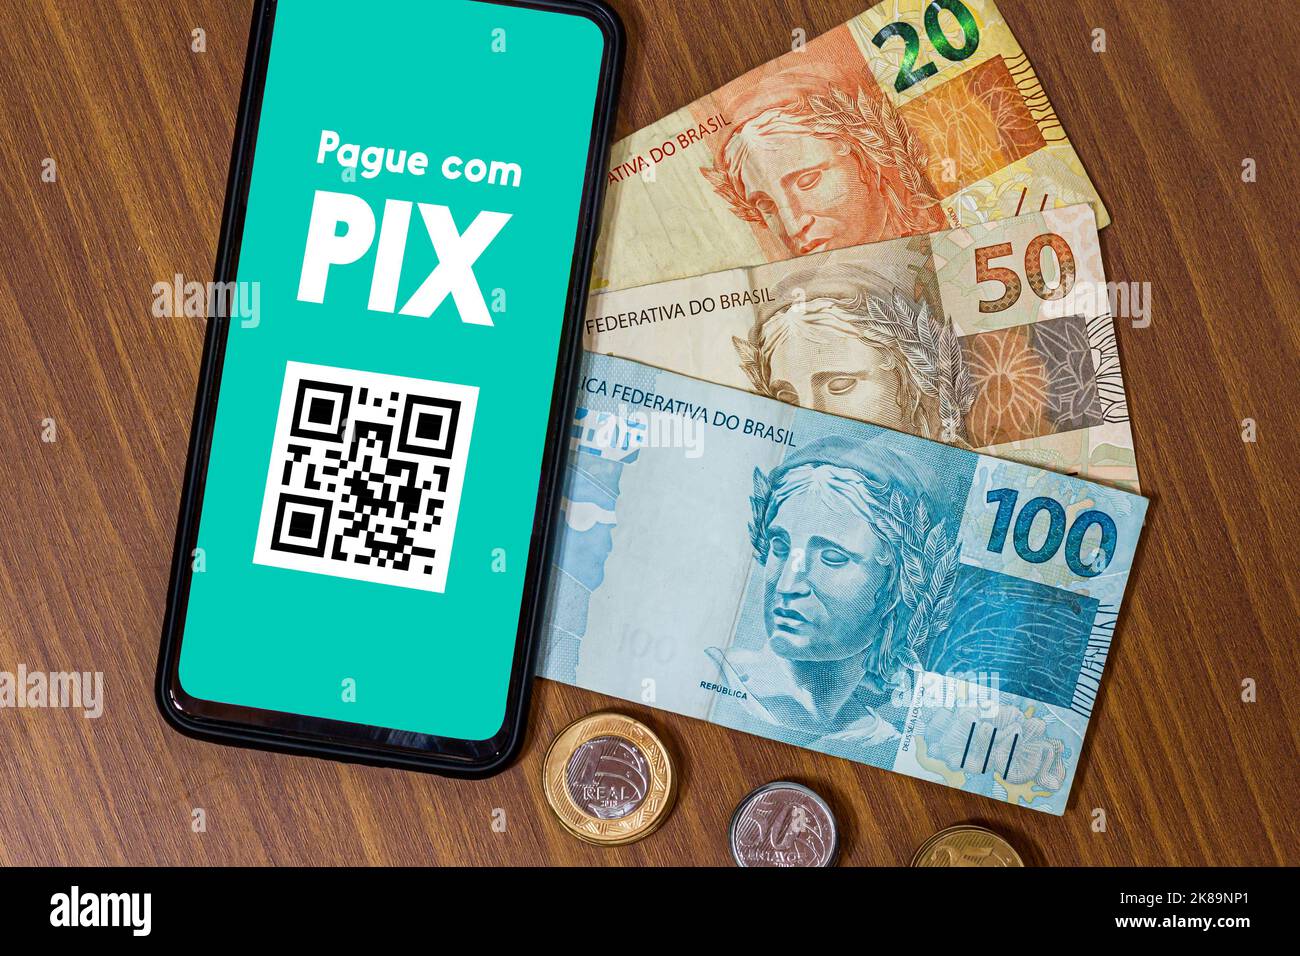 PIX sullo schermo dello smartphone con più monete intorno. PIX è il nuovo sistema di pagamento e trasferimento del governo brasiliano e brasiliano Foto Stock